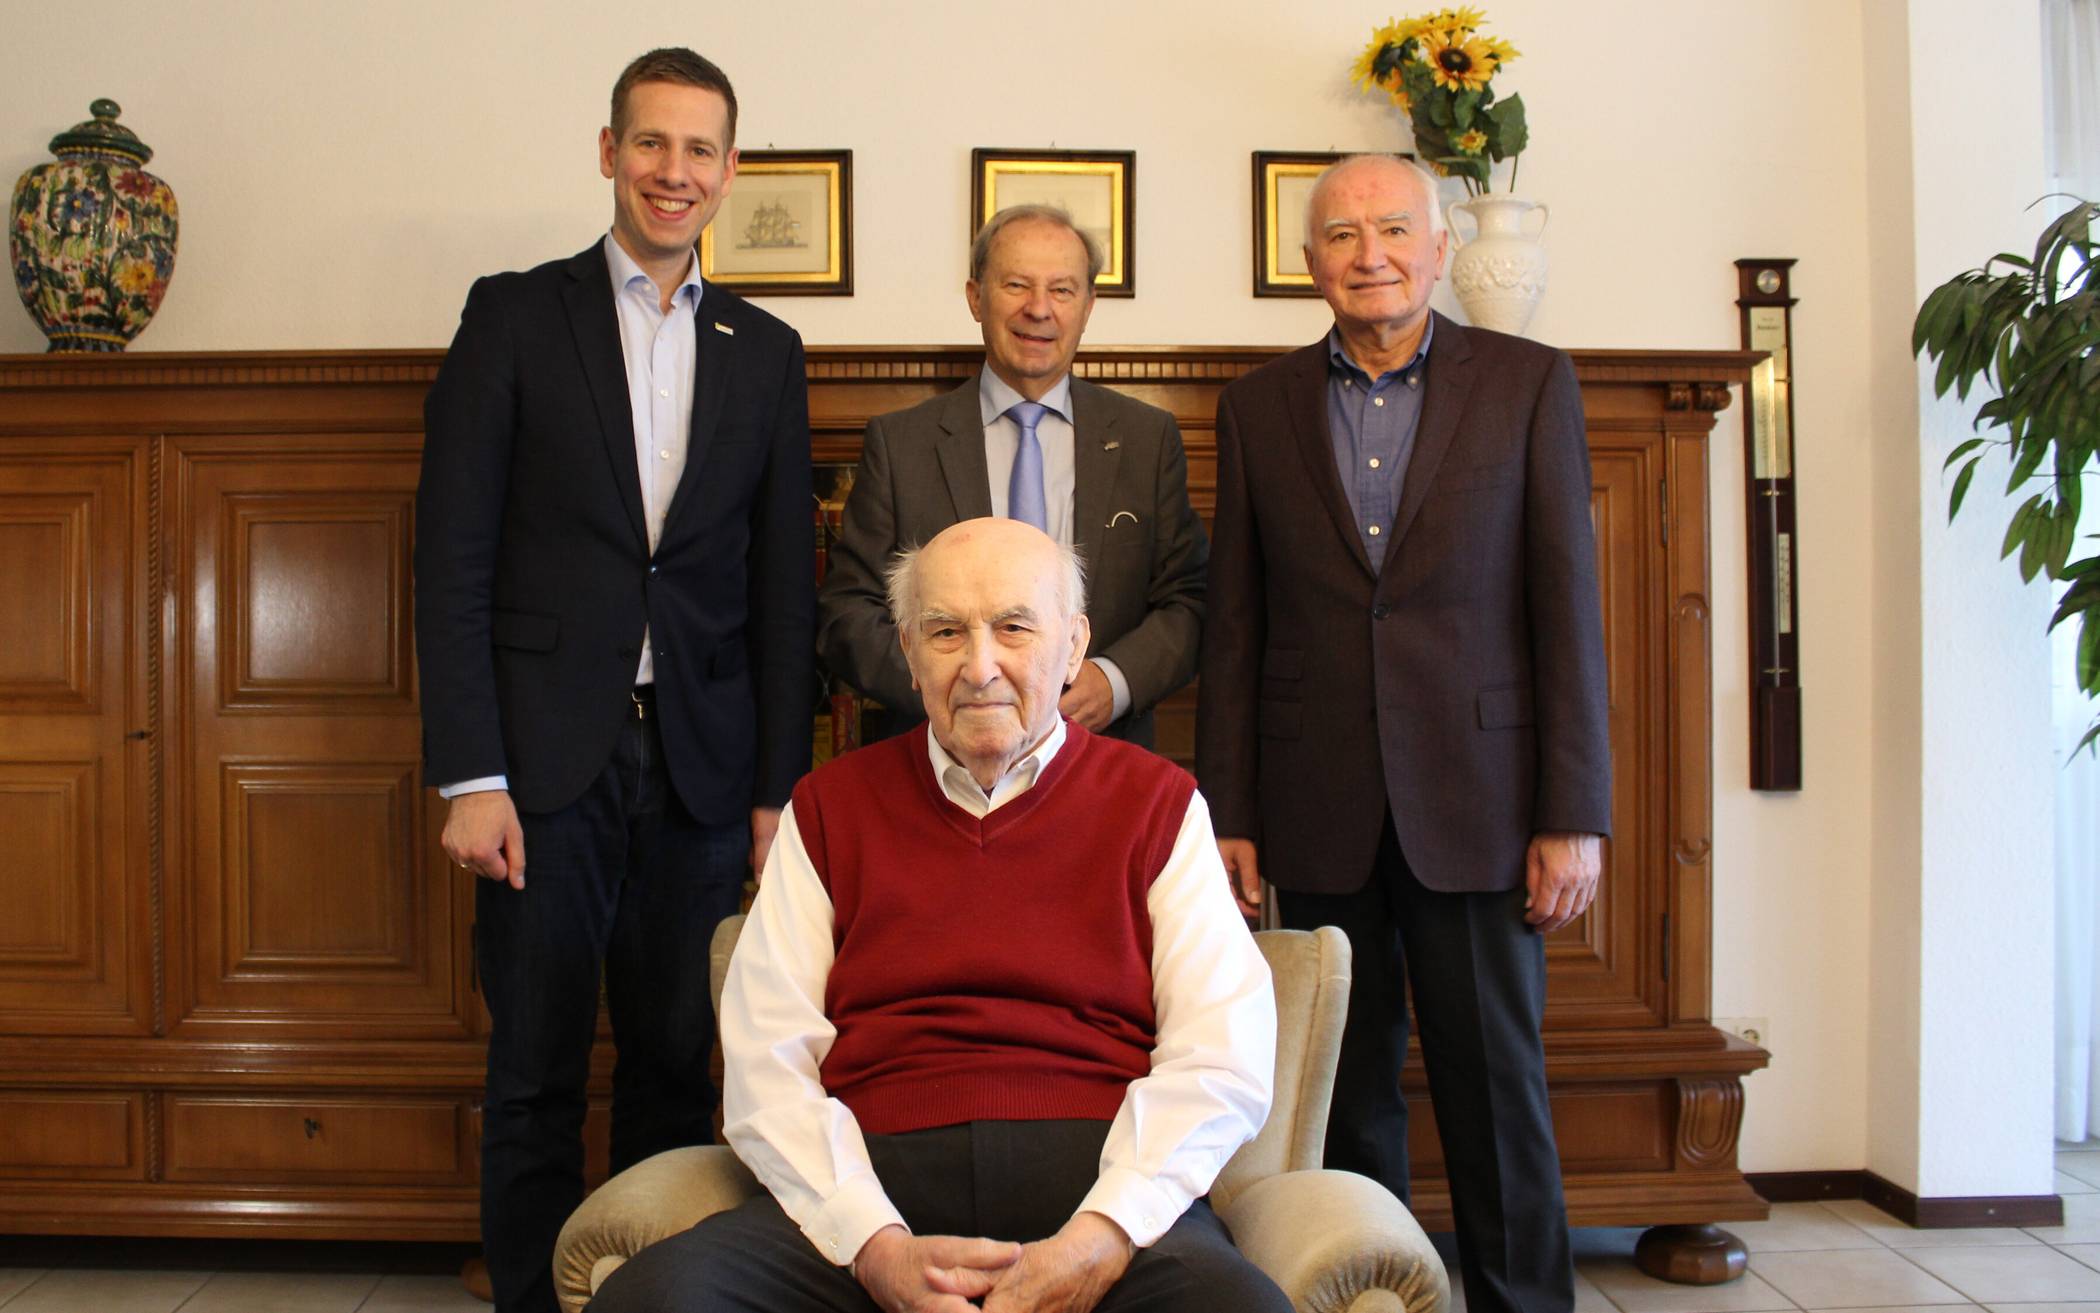  Bürgermeister Christoph Schultz (l.) besuchte mit dem stellvertretenden Landrat Michael Ruppert (Mi.) Arno Werner an seinem 101. Geburtstag. An der Seite seines Vaters feierte auch Bürgermeister a.D. Arno Werner (r.). 